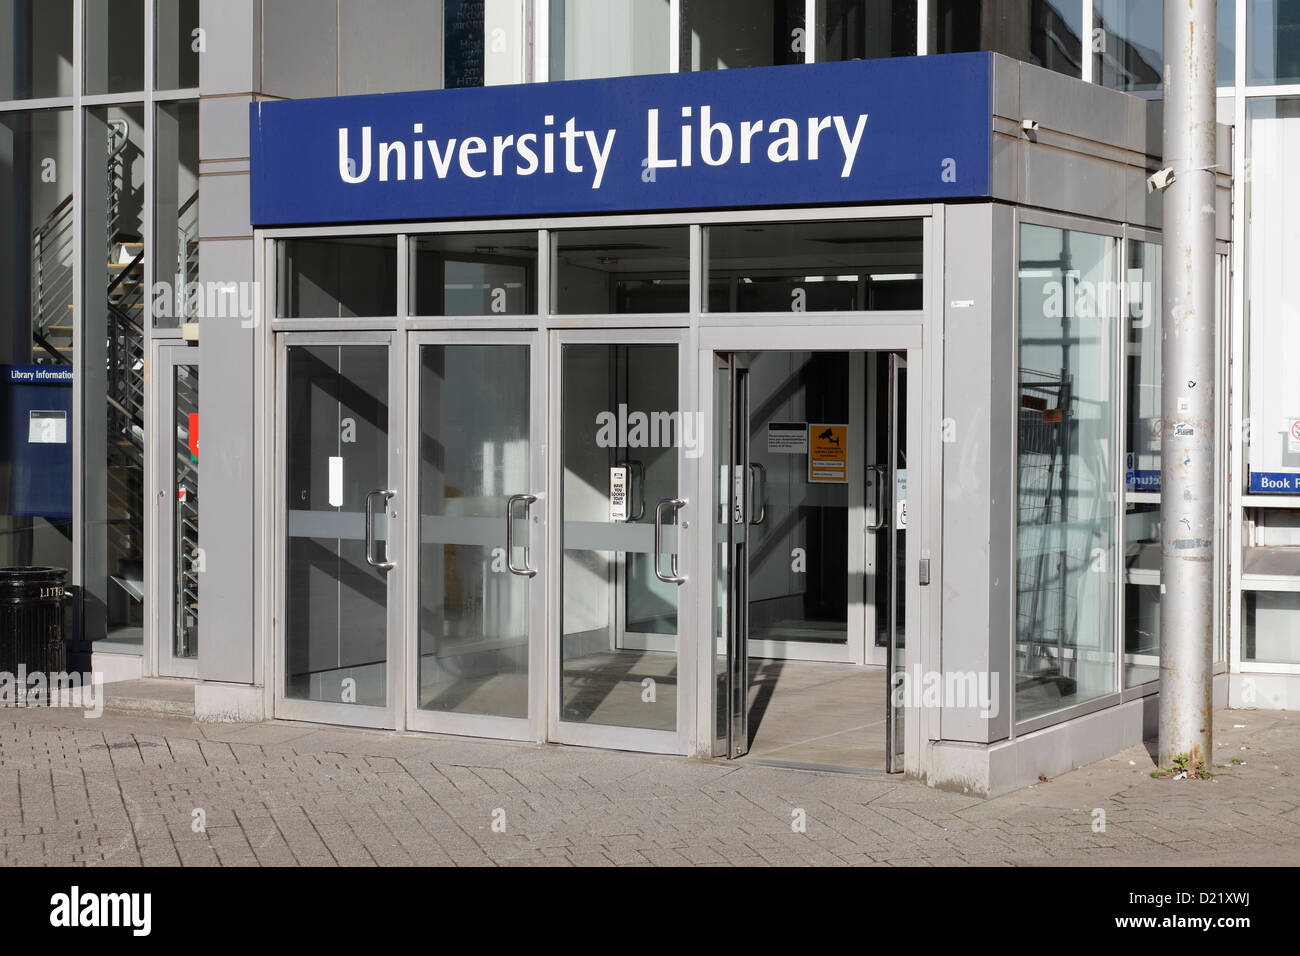 L'ingresso della biblioteca è cambiato. Ingresso alla Biblioteca del campus dell'Università di Glasgow, Scozia, Regno Unito Foto Stock